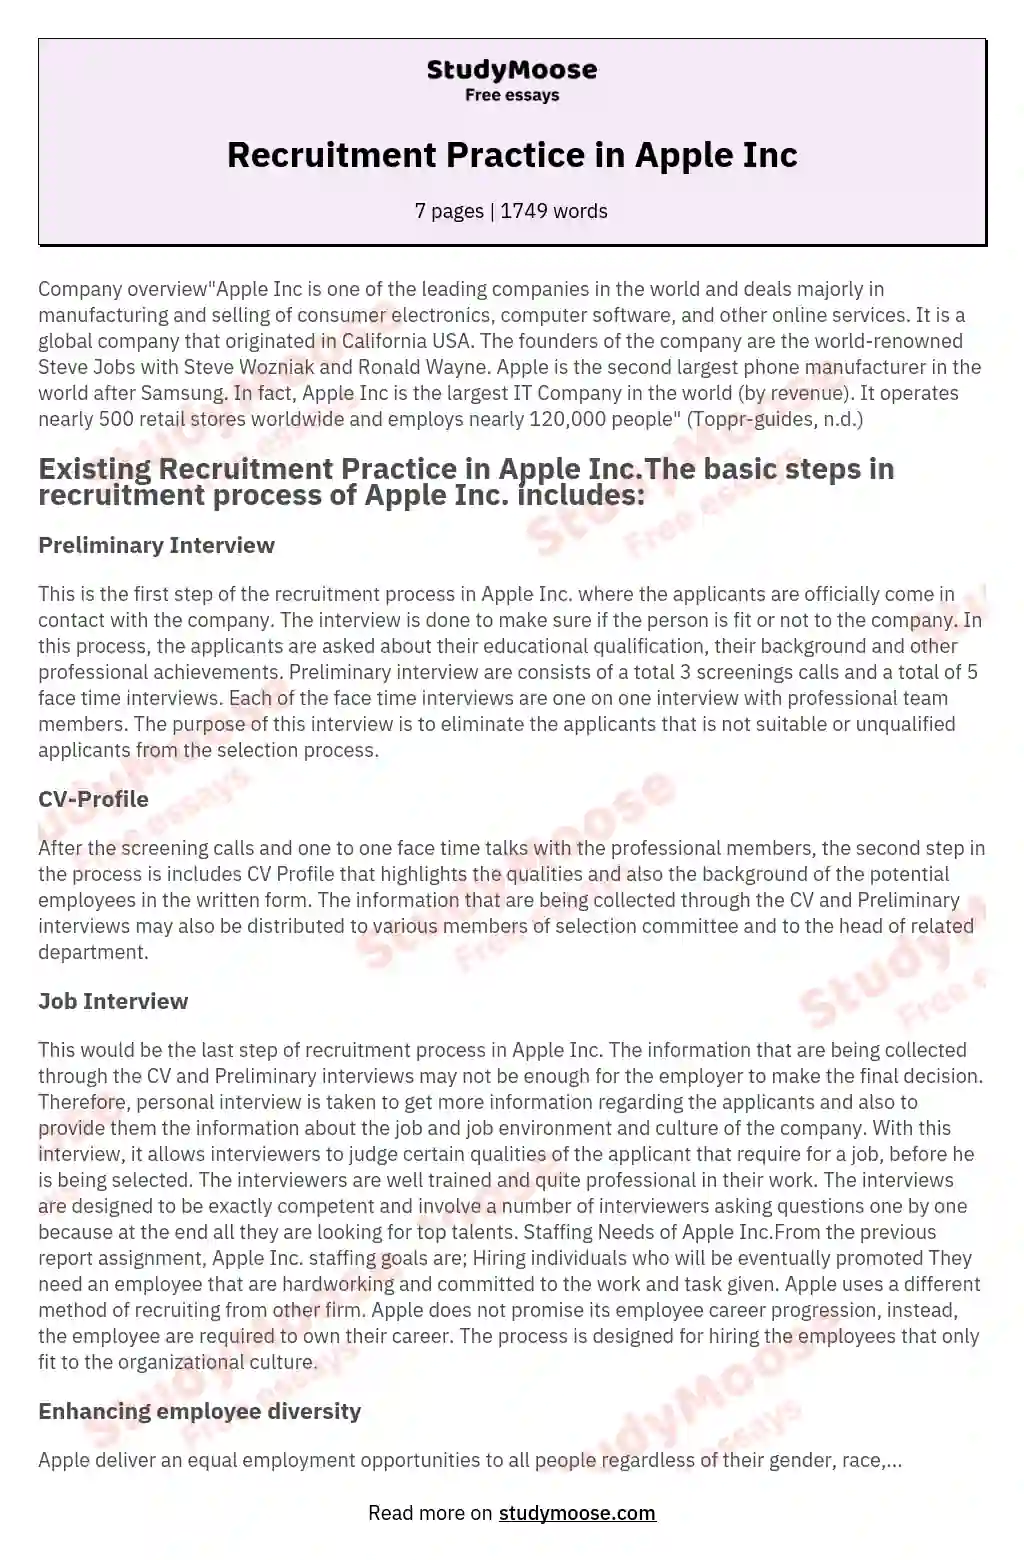 Recruitment Practice in Apple Inc essay